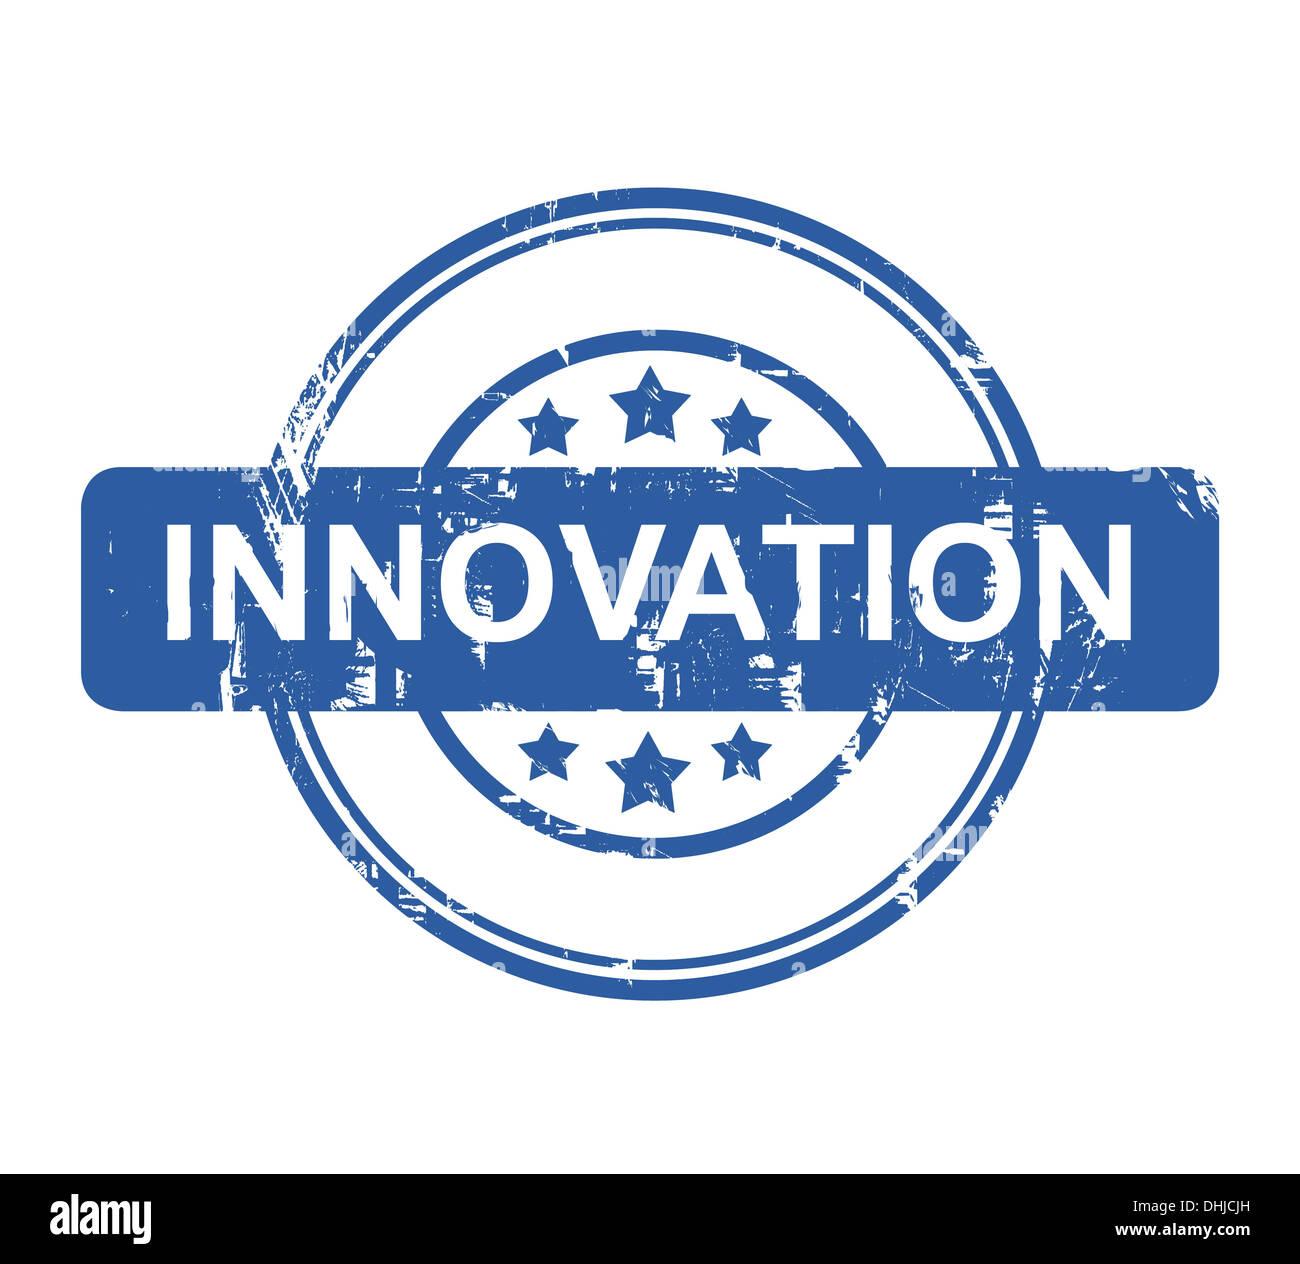 Business Innovation Stempel mit Sternen isoliert auf einem weißen Hintergrund. Stockfoto